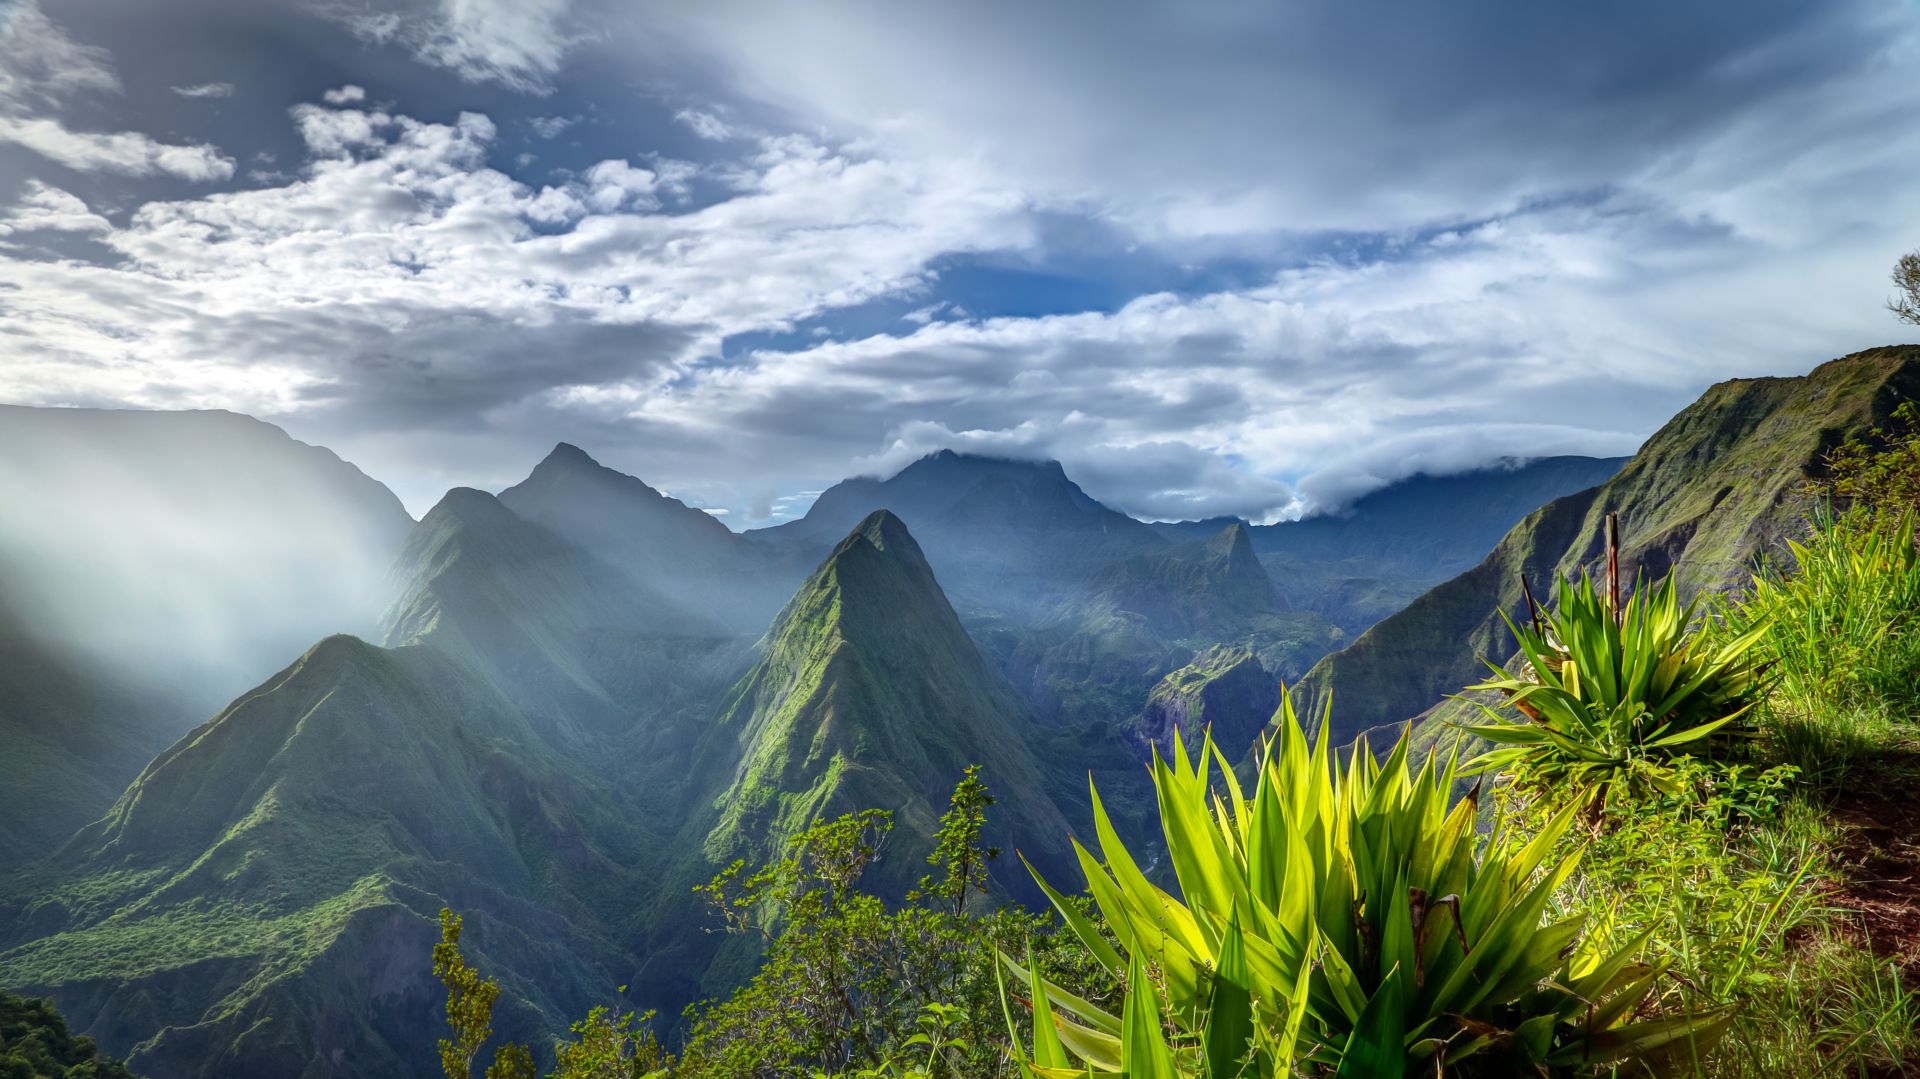 Les mystères du vétiver  Vivez une expérience unique à La Réunion